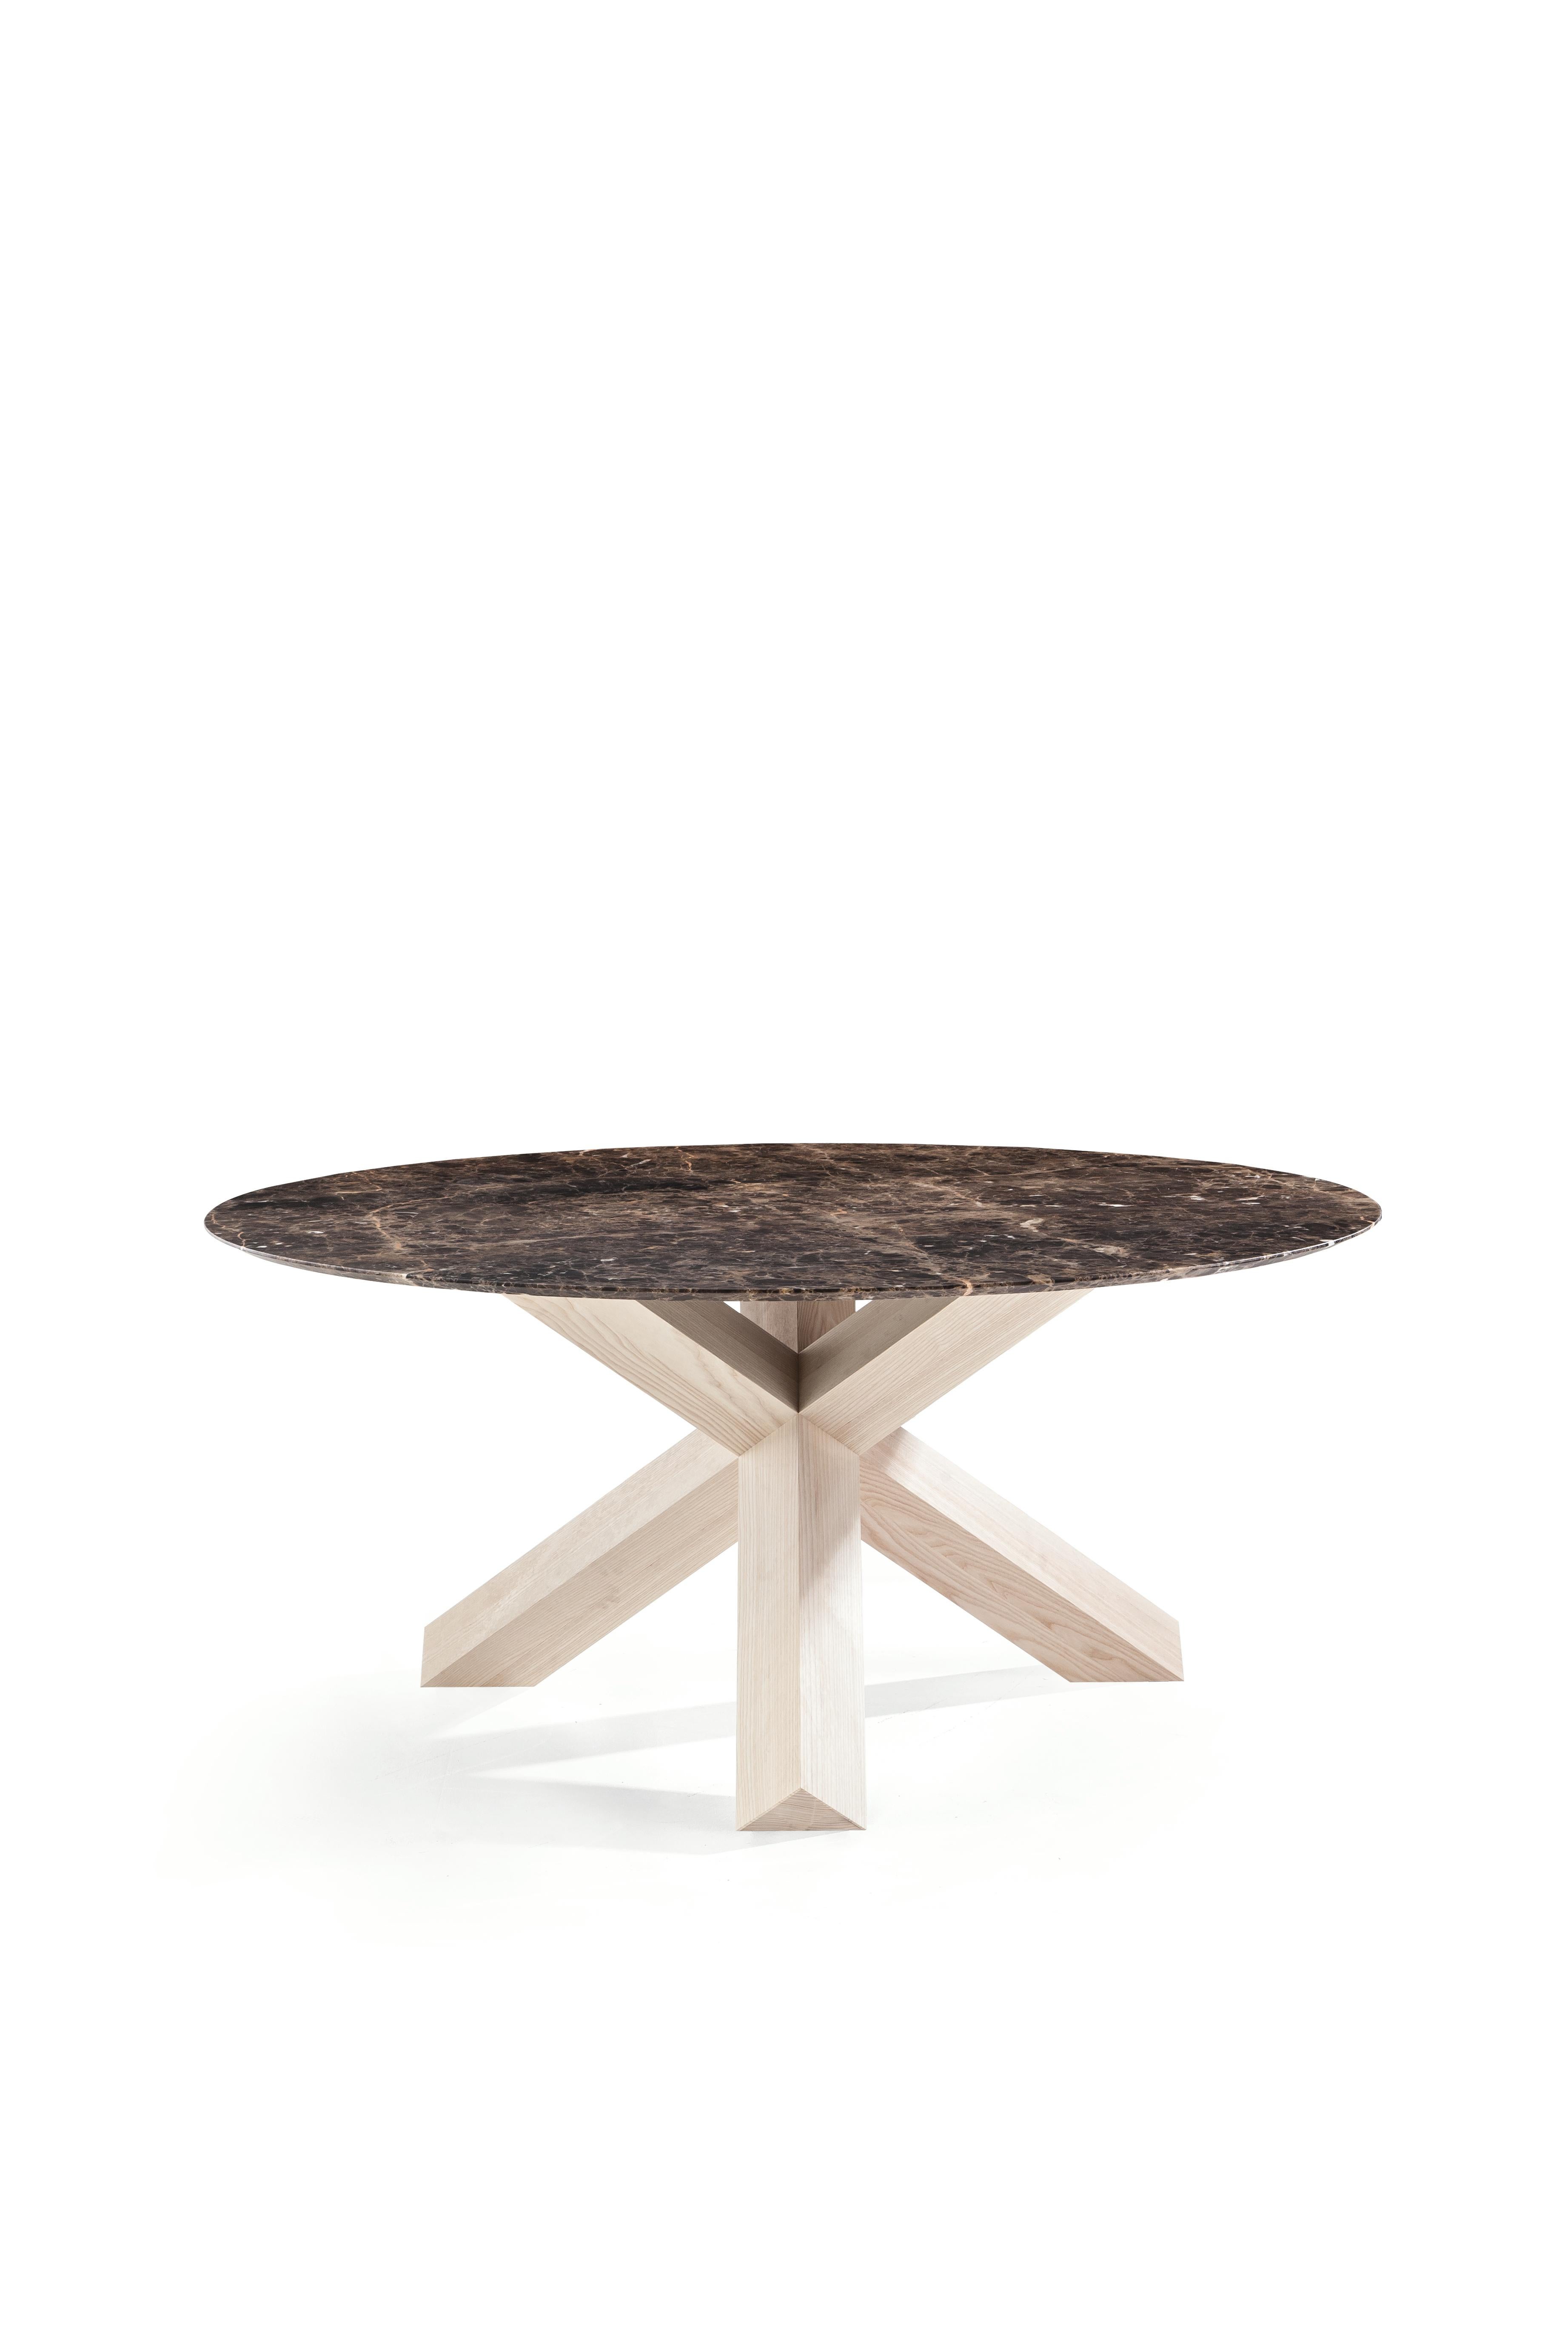 Italian Mario Bellini La Rotonda Table by Cassina For Sale